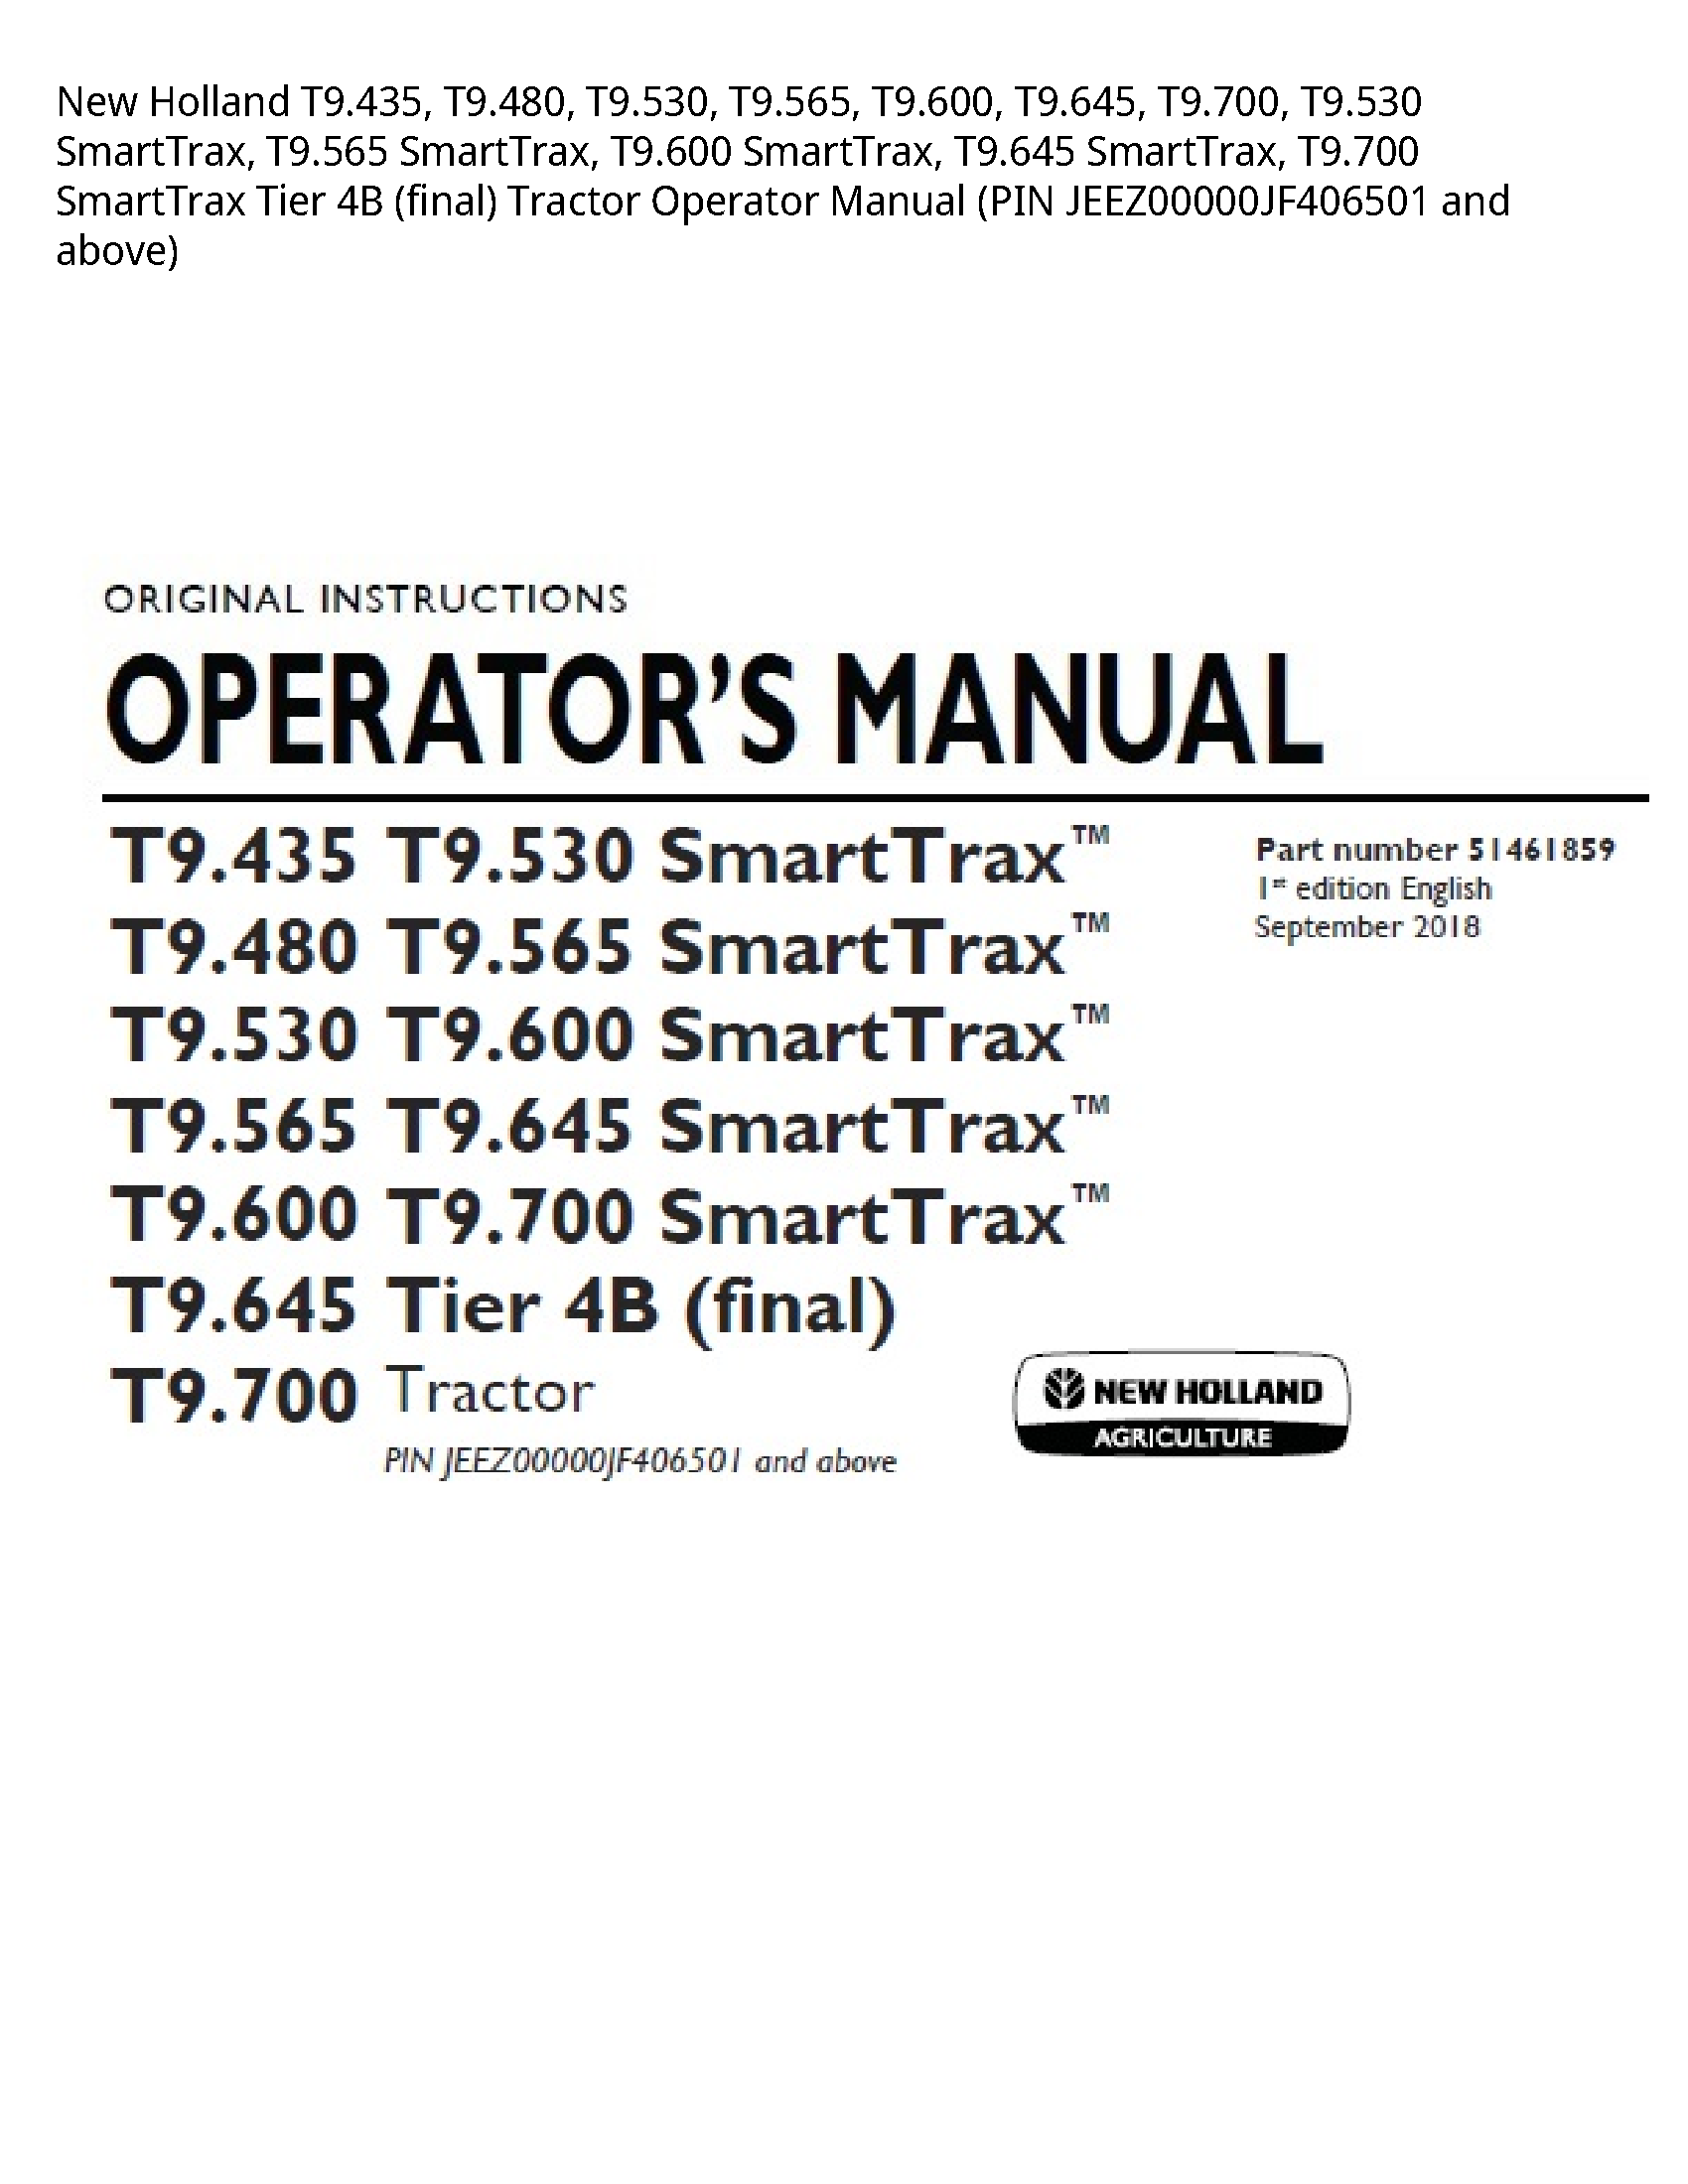 New Holland T9.435 SmartTrax manual